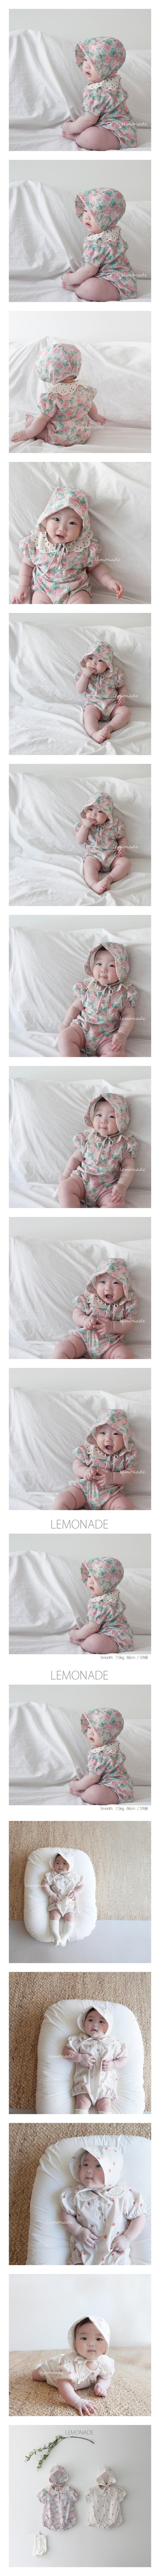 Lemonade - Korean Baby Fashion - #babyboutiqueclothing - Risian Bodysuit - 2